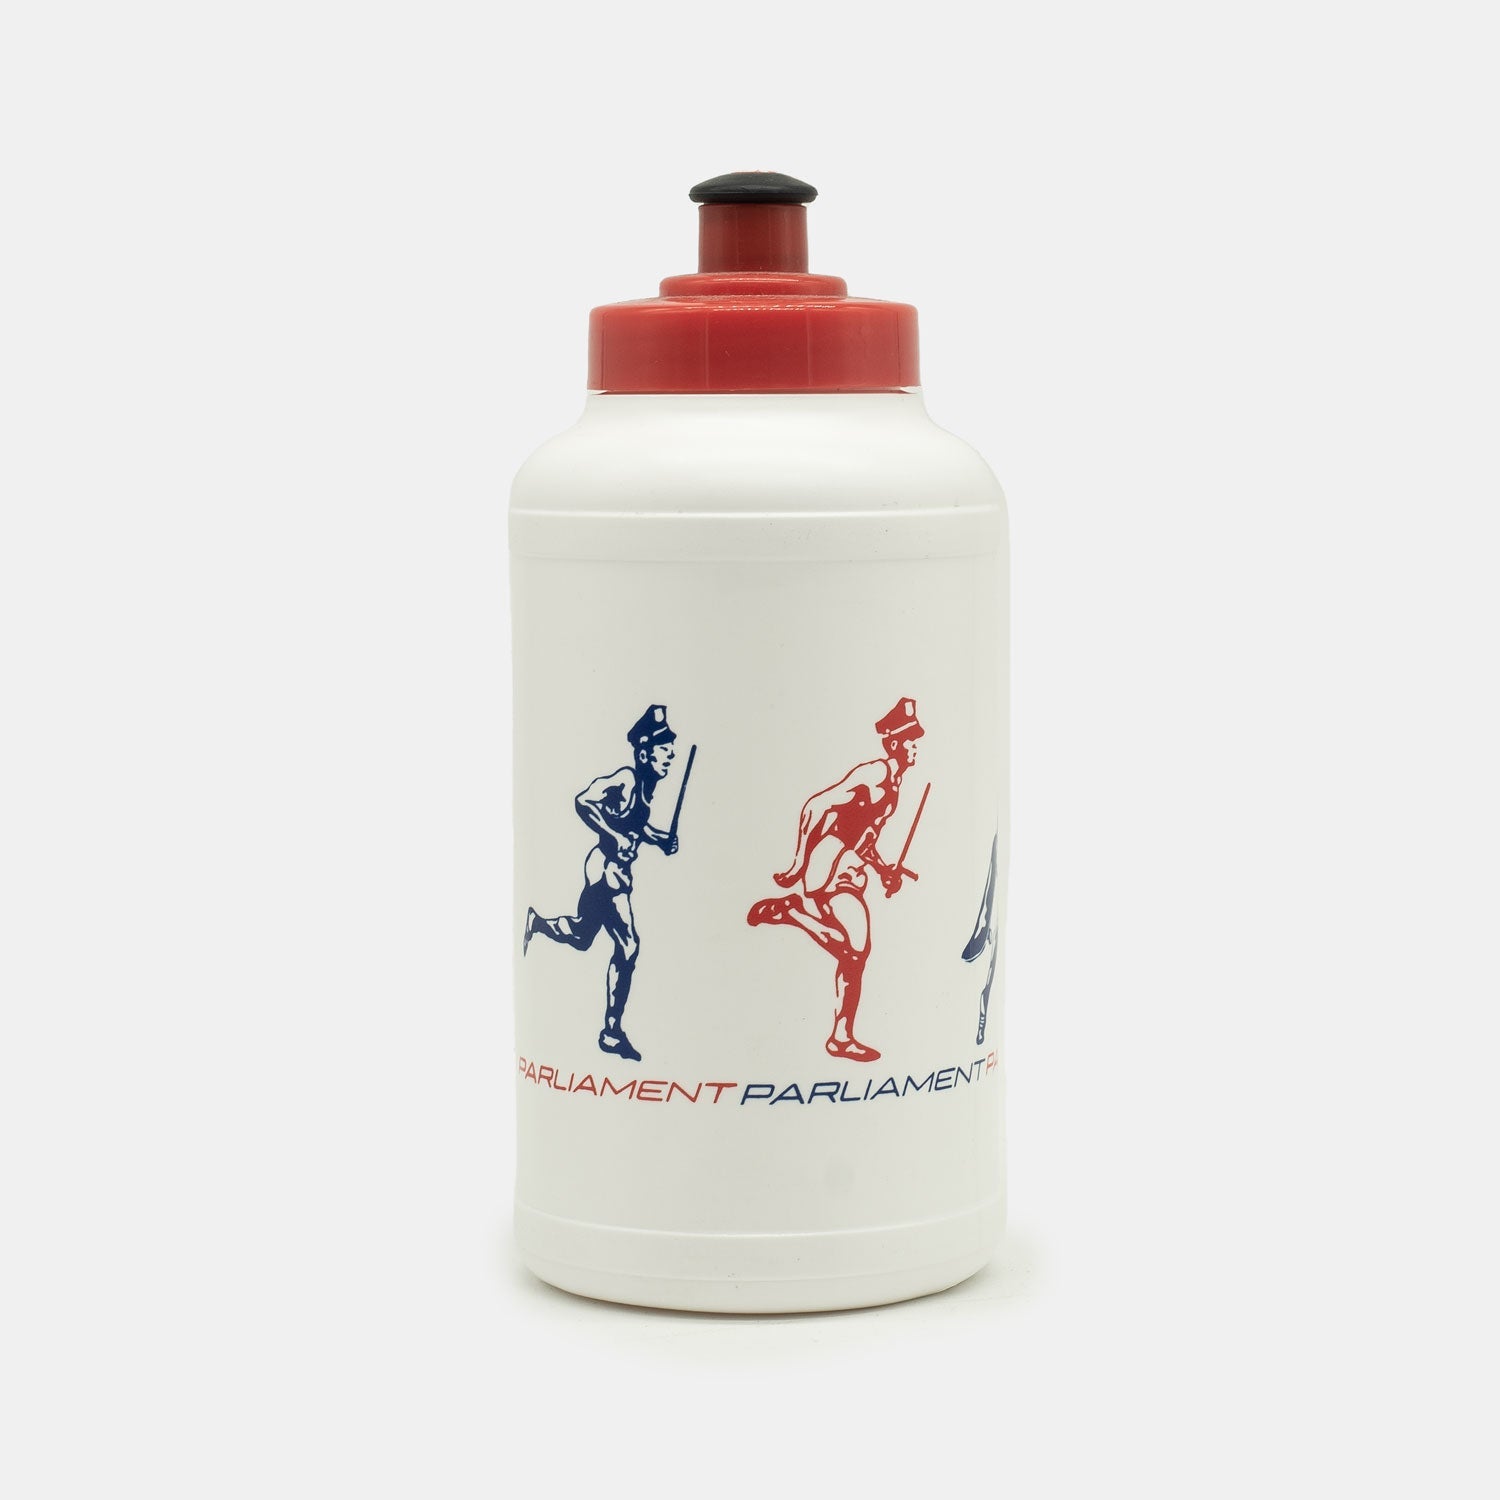 Parliament - Commonwealth Games - Running Drink Bottle (Red) - Parliamentskateshop